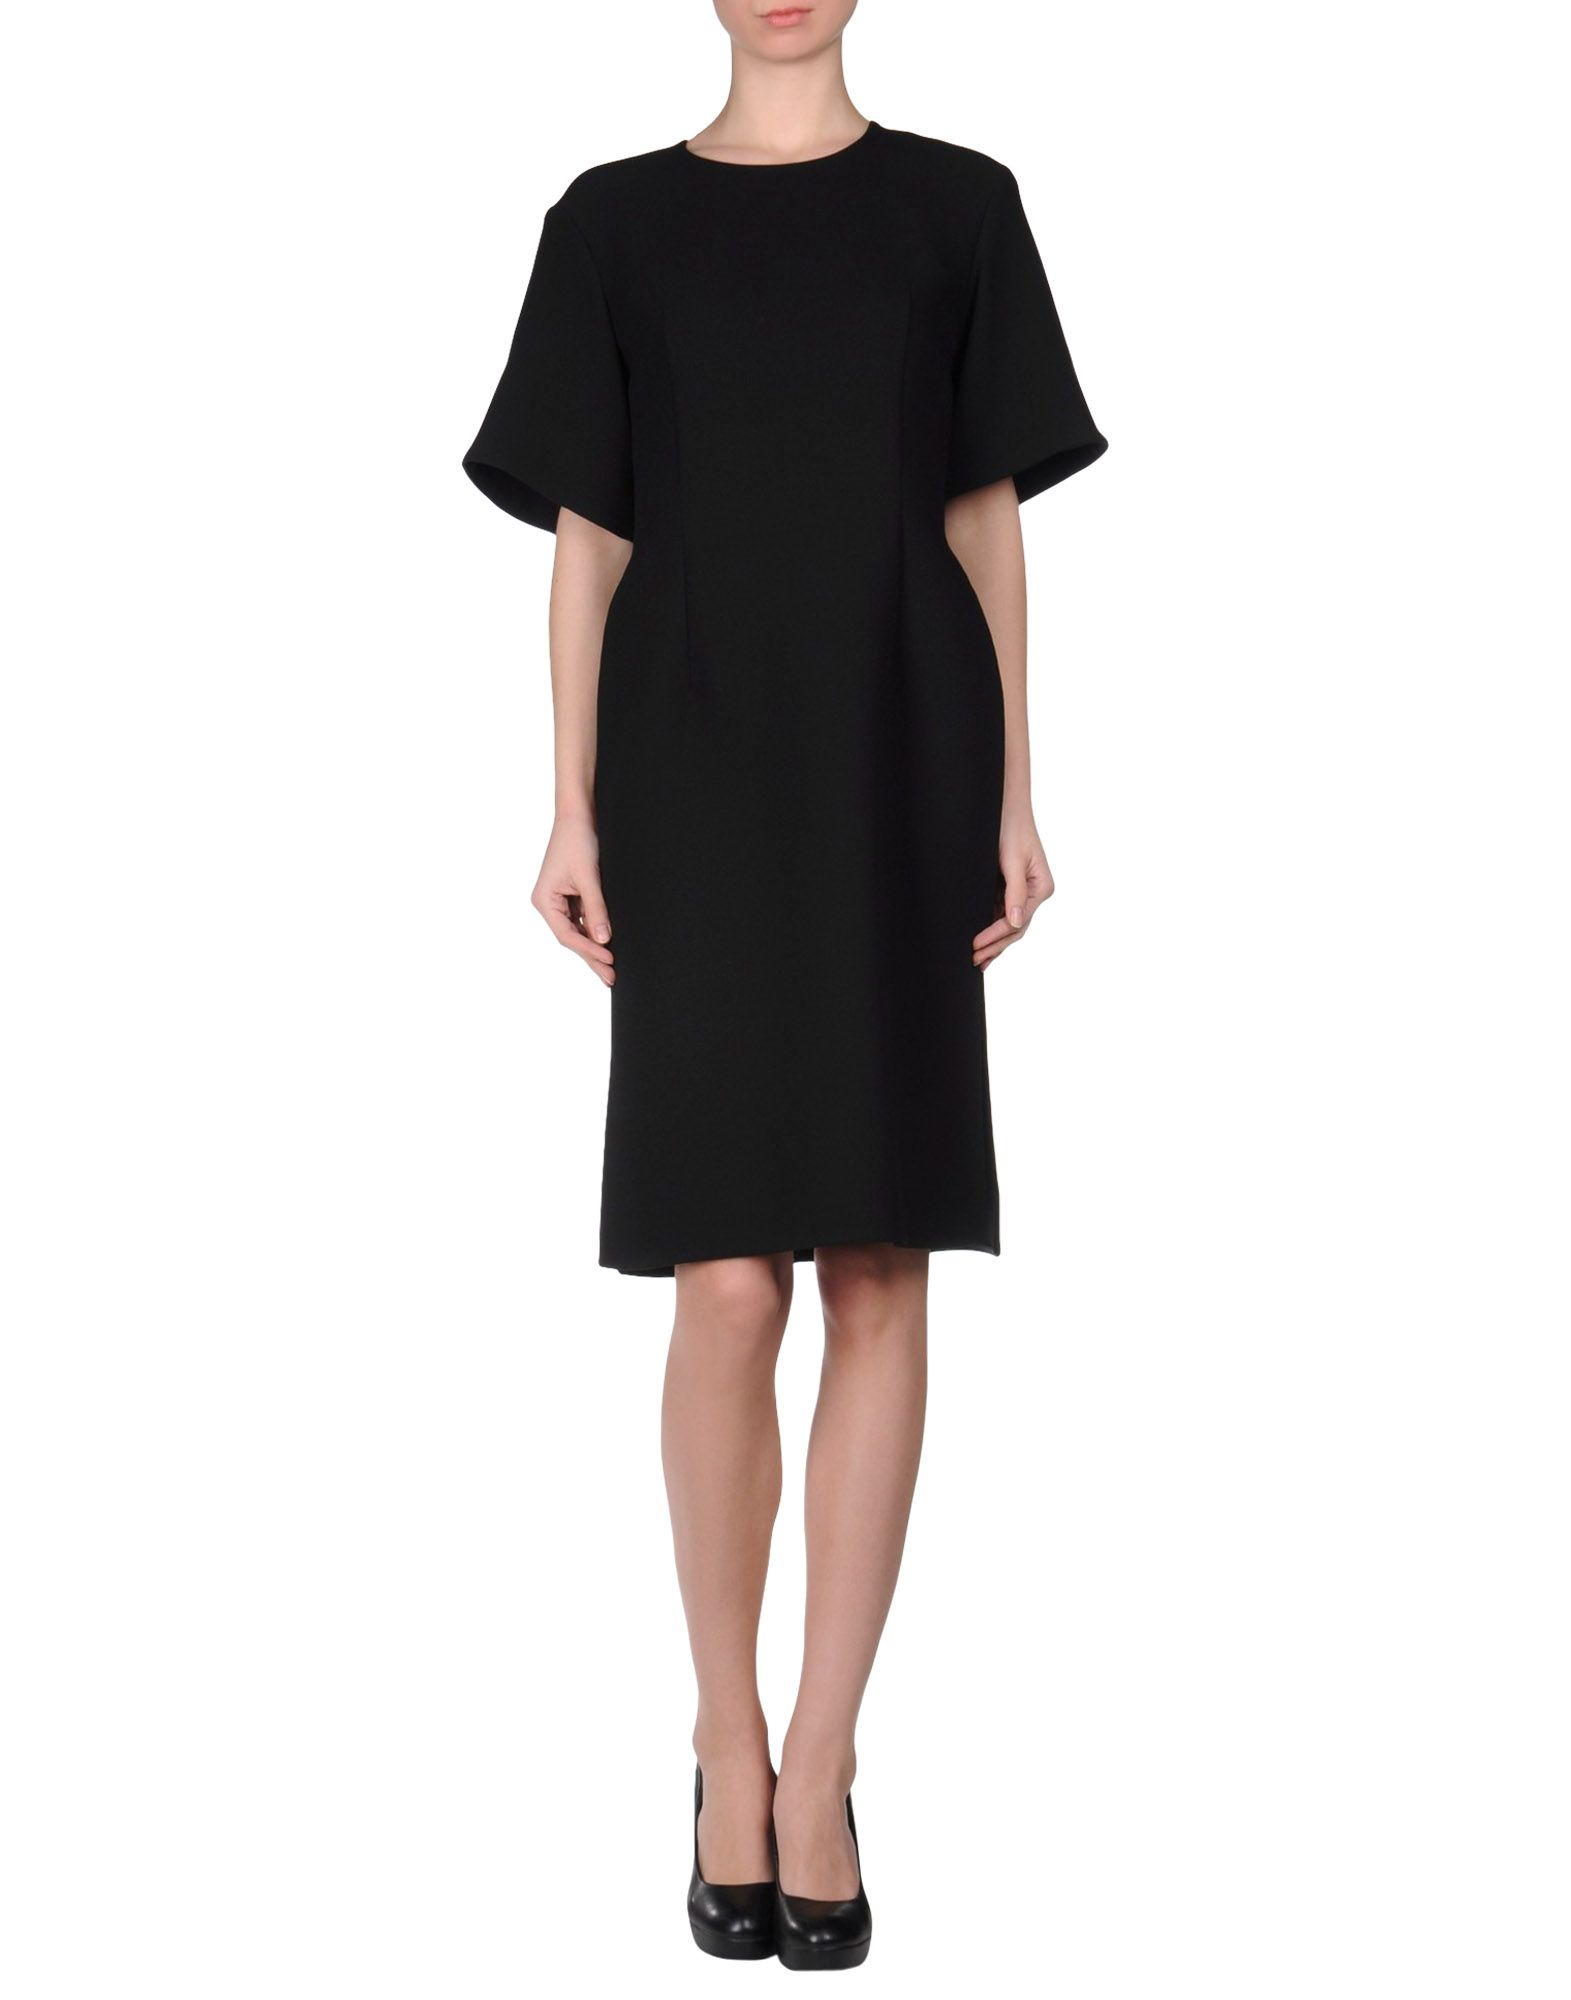 Marni Short-Sleeves Wool Knee-Length Dress in Black | Lyst